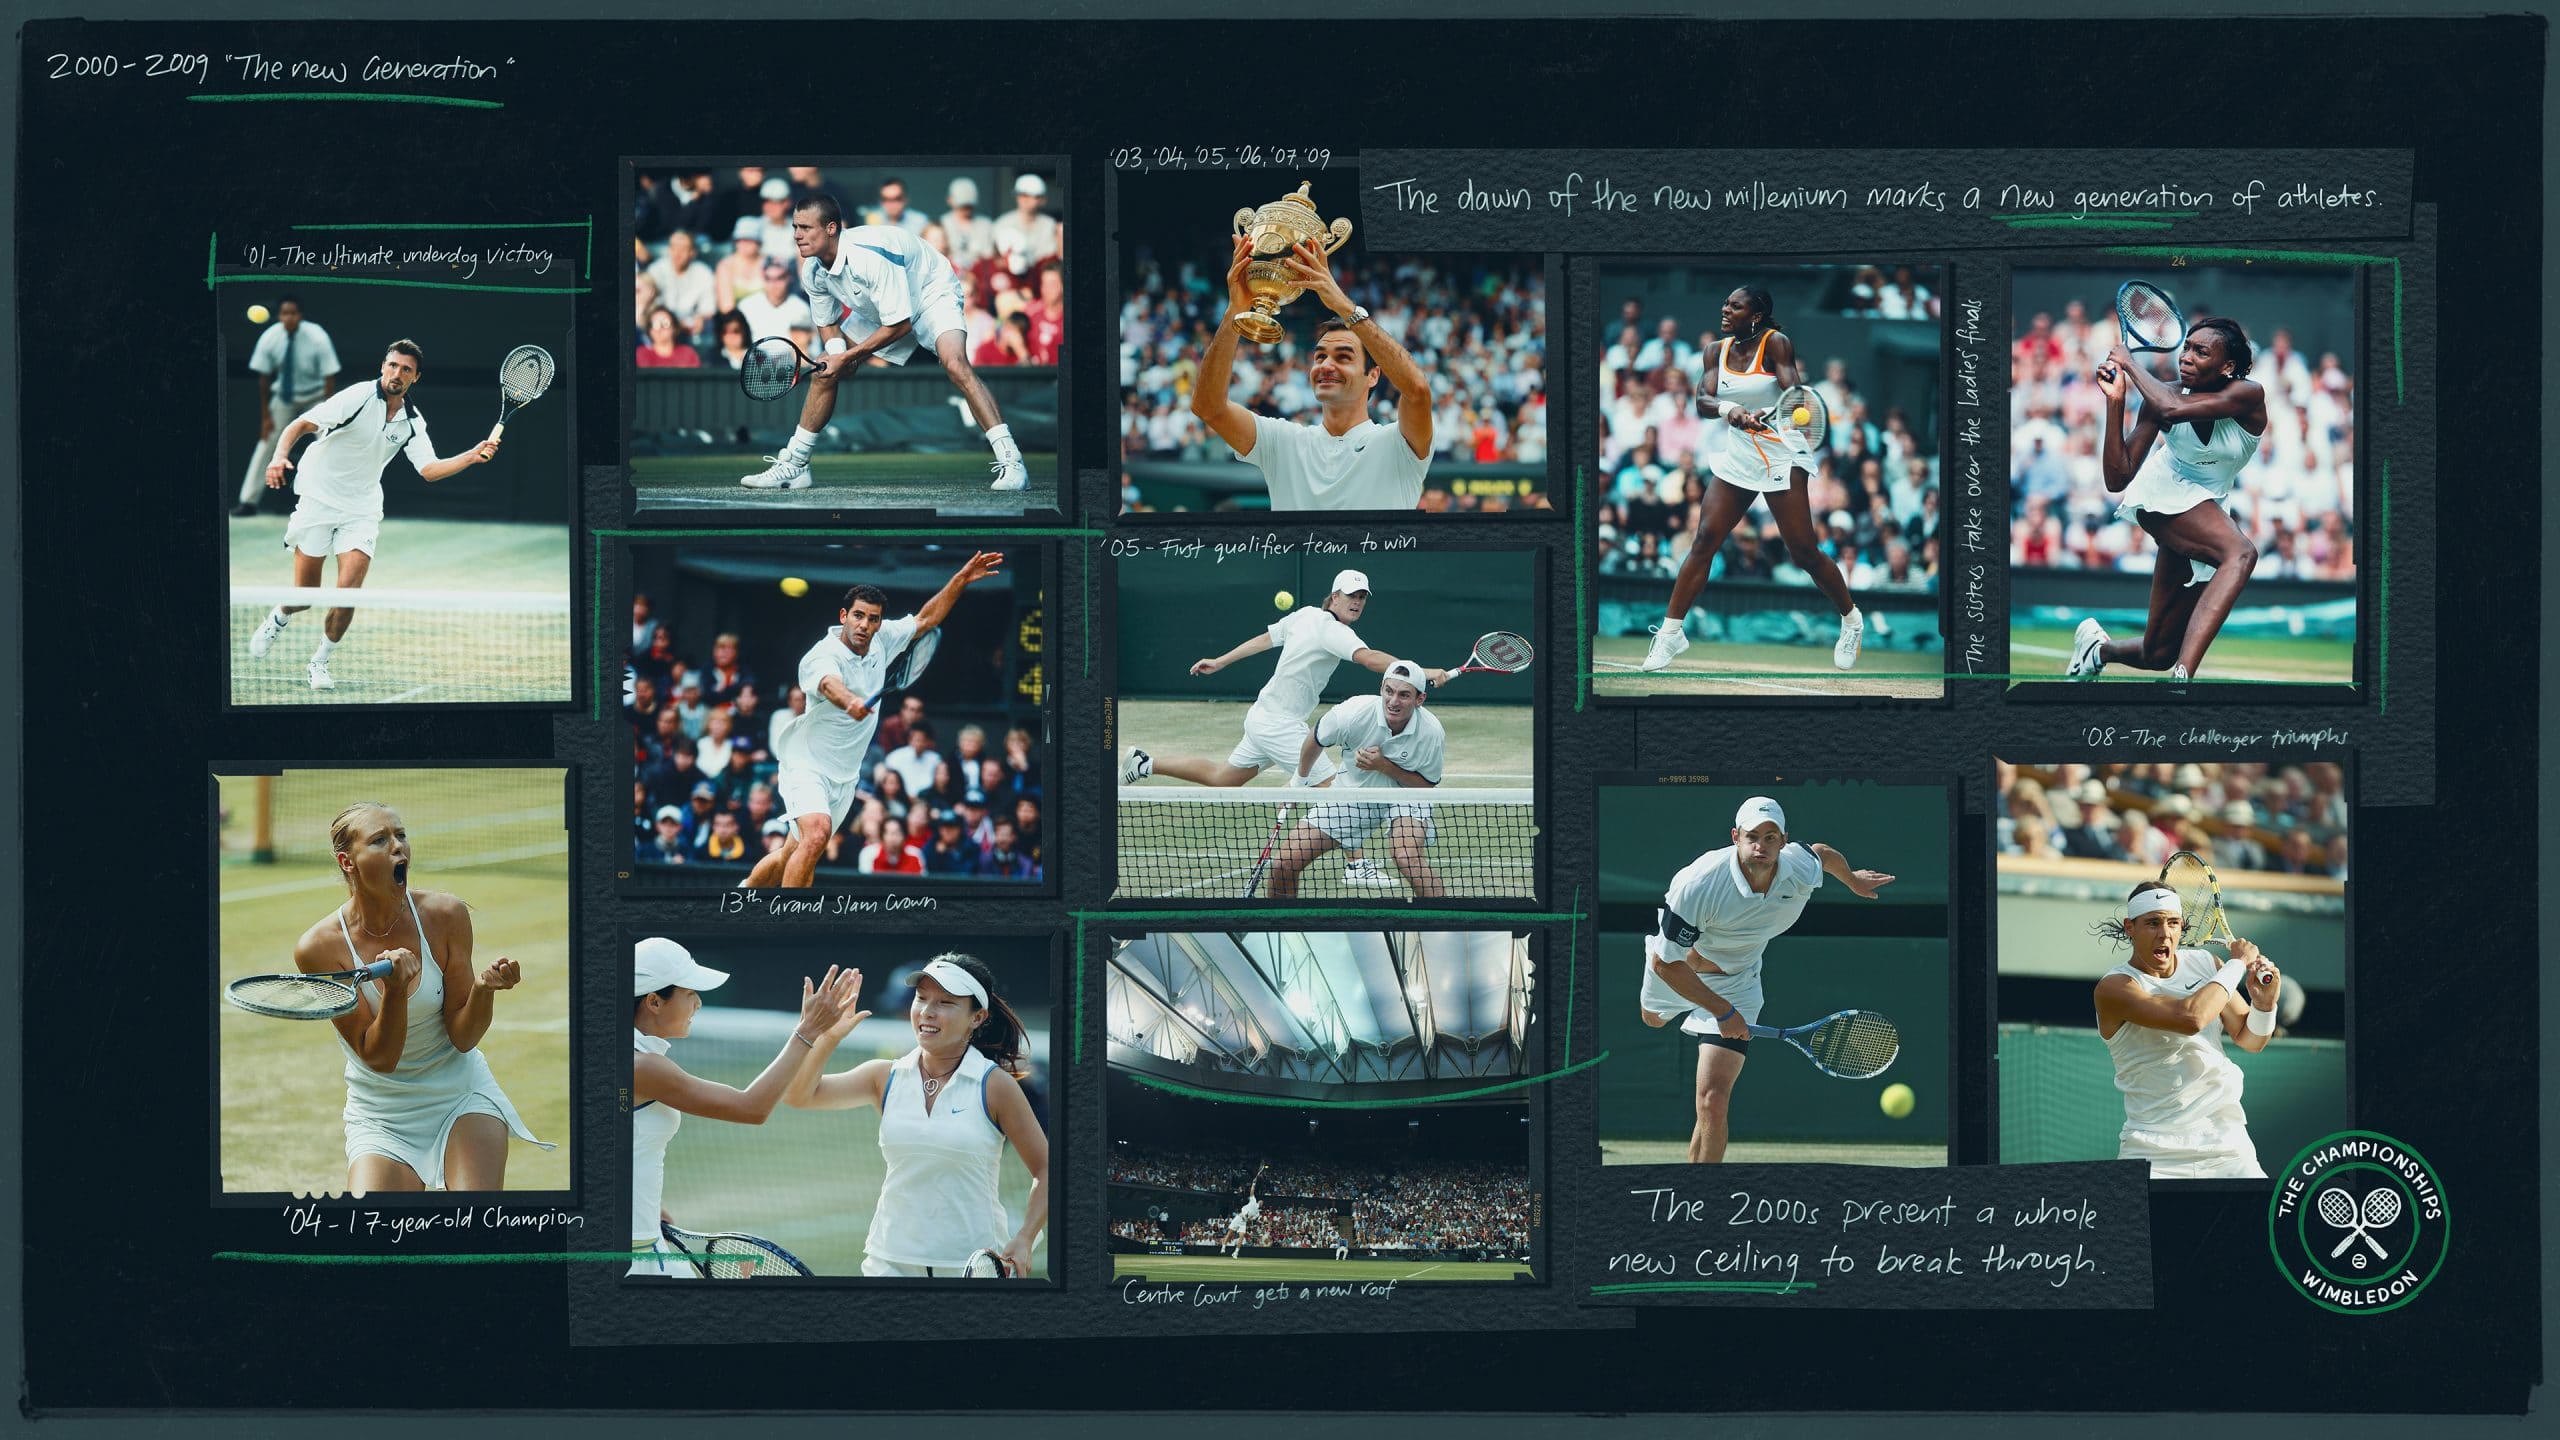 Image from Wimbledon tennis games NFT